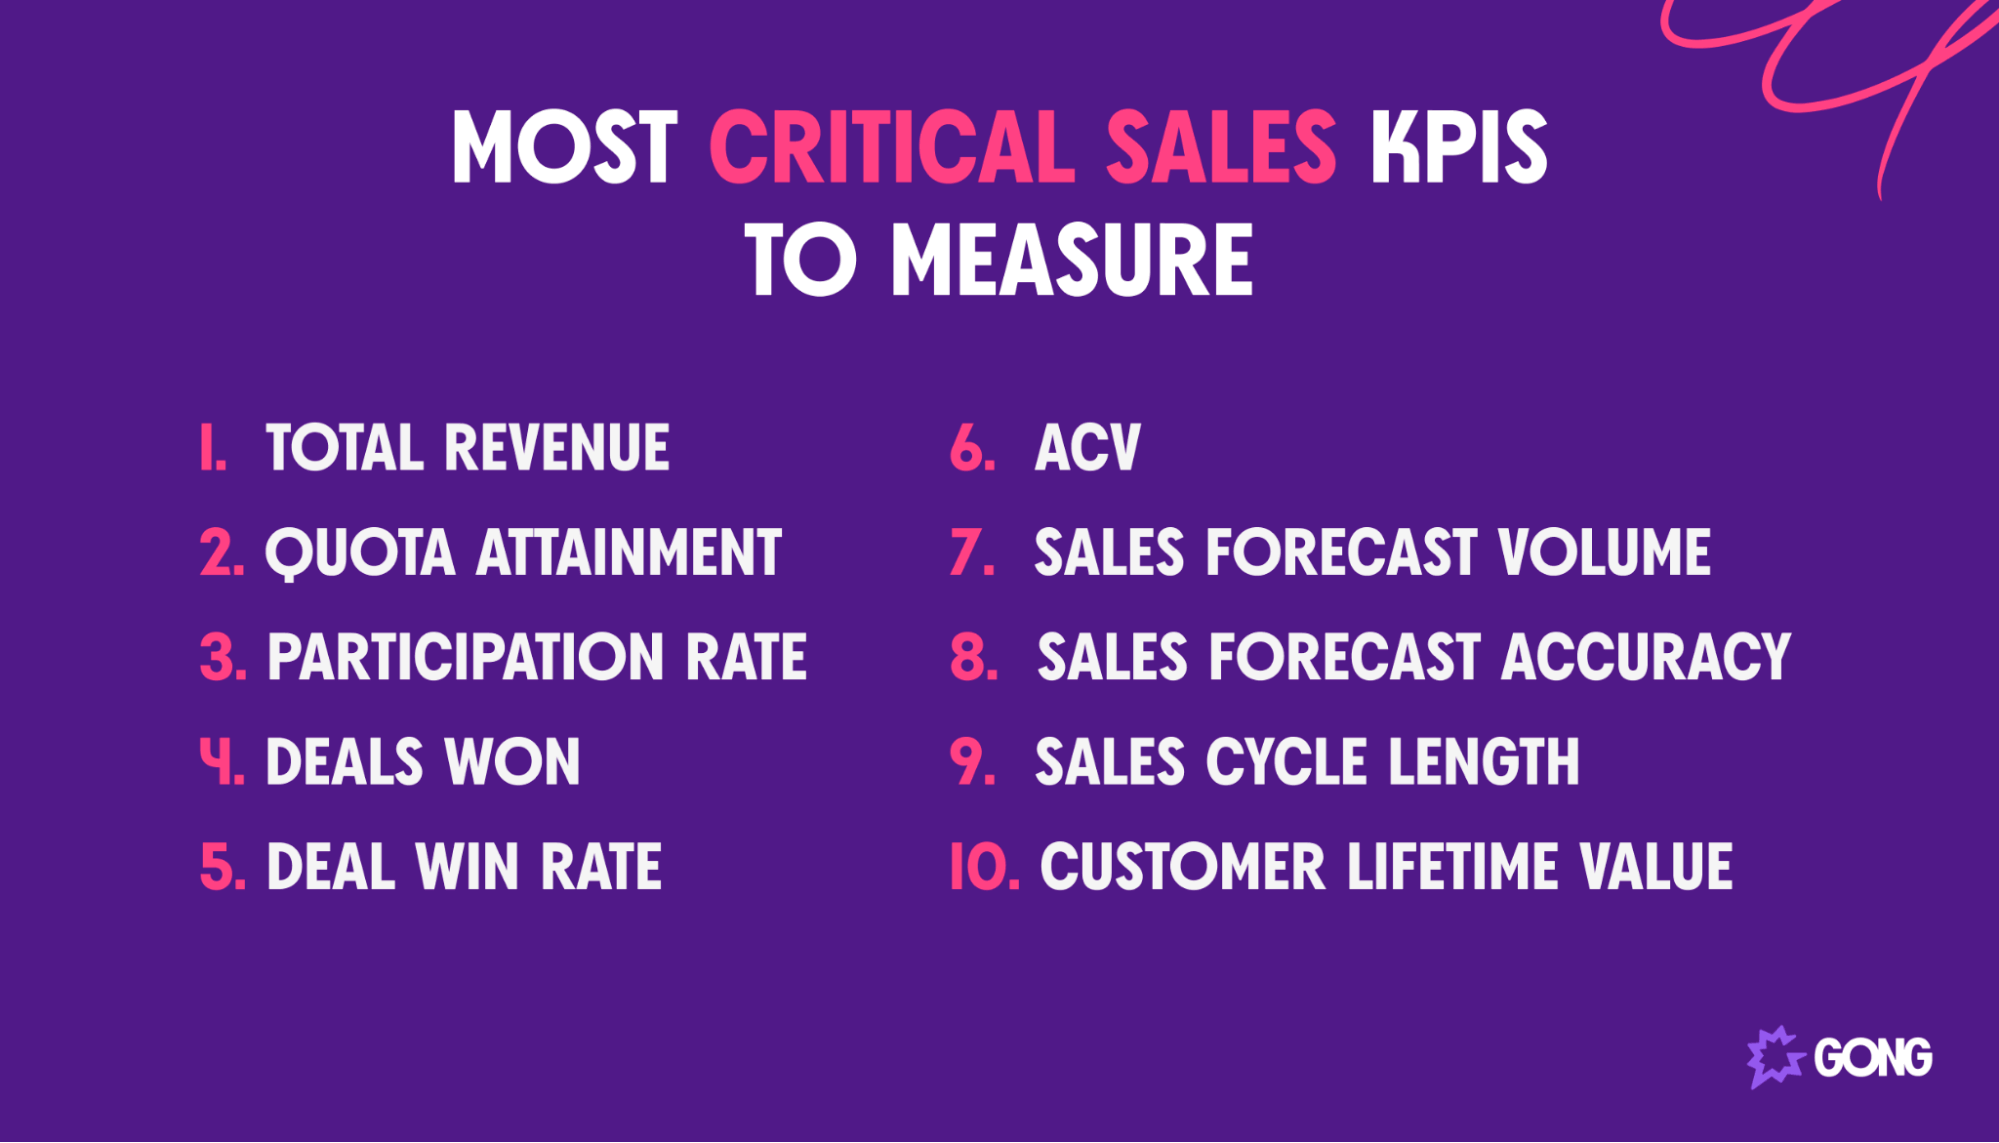 Top sales KPIs to measure